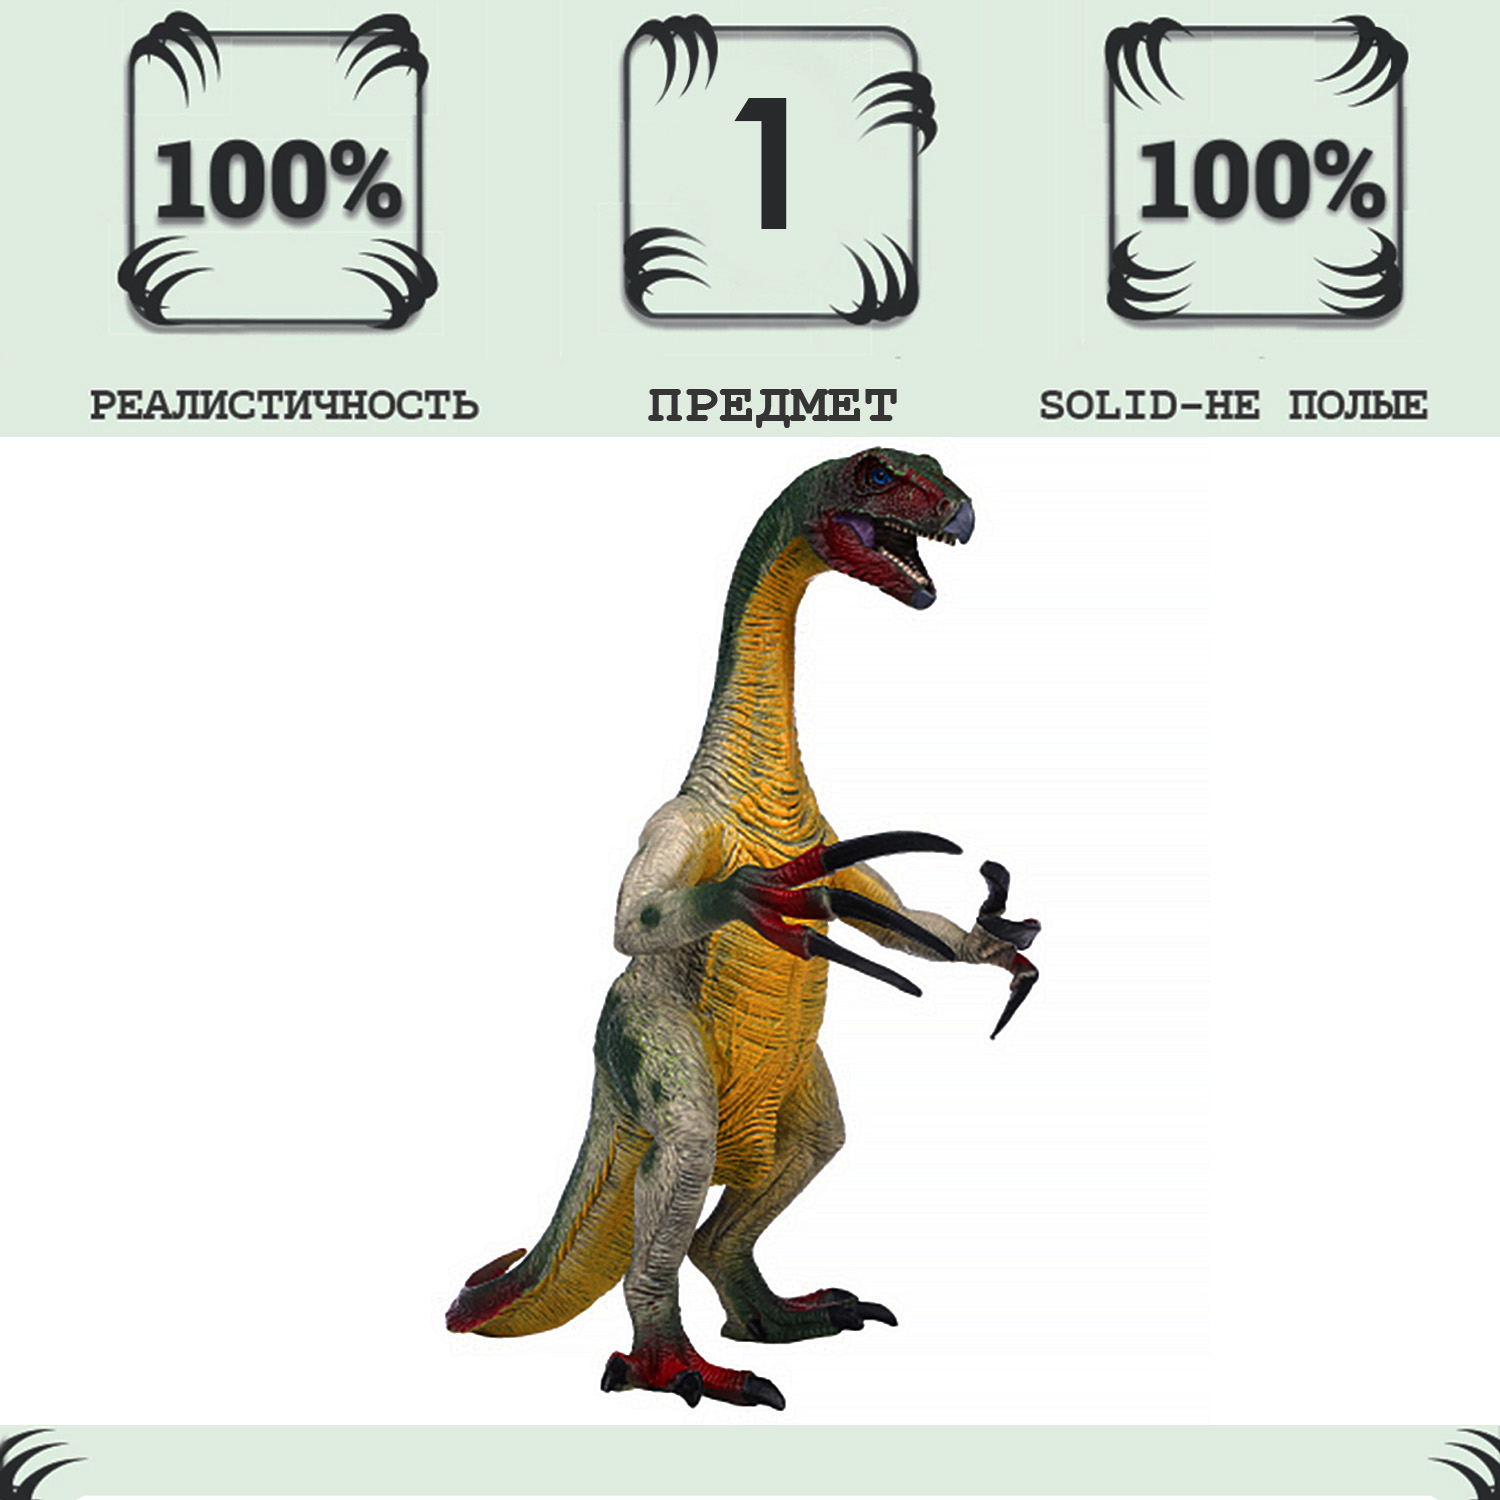 Игрушка динозавр серии Мир динозавров Masai Mara Теризинозавр MM216-089